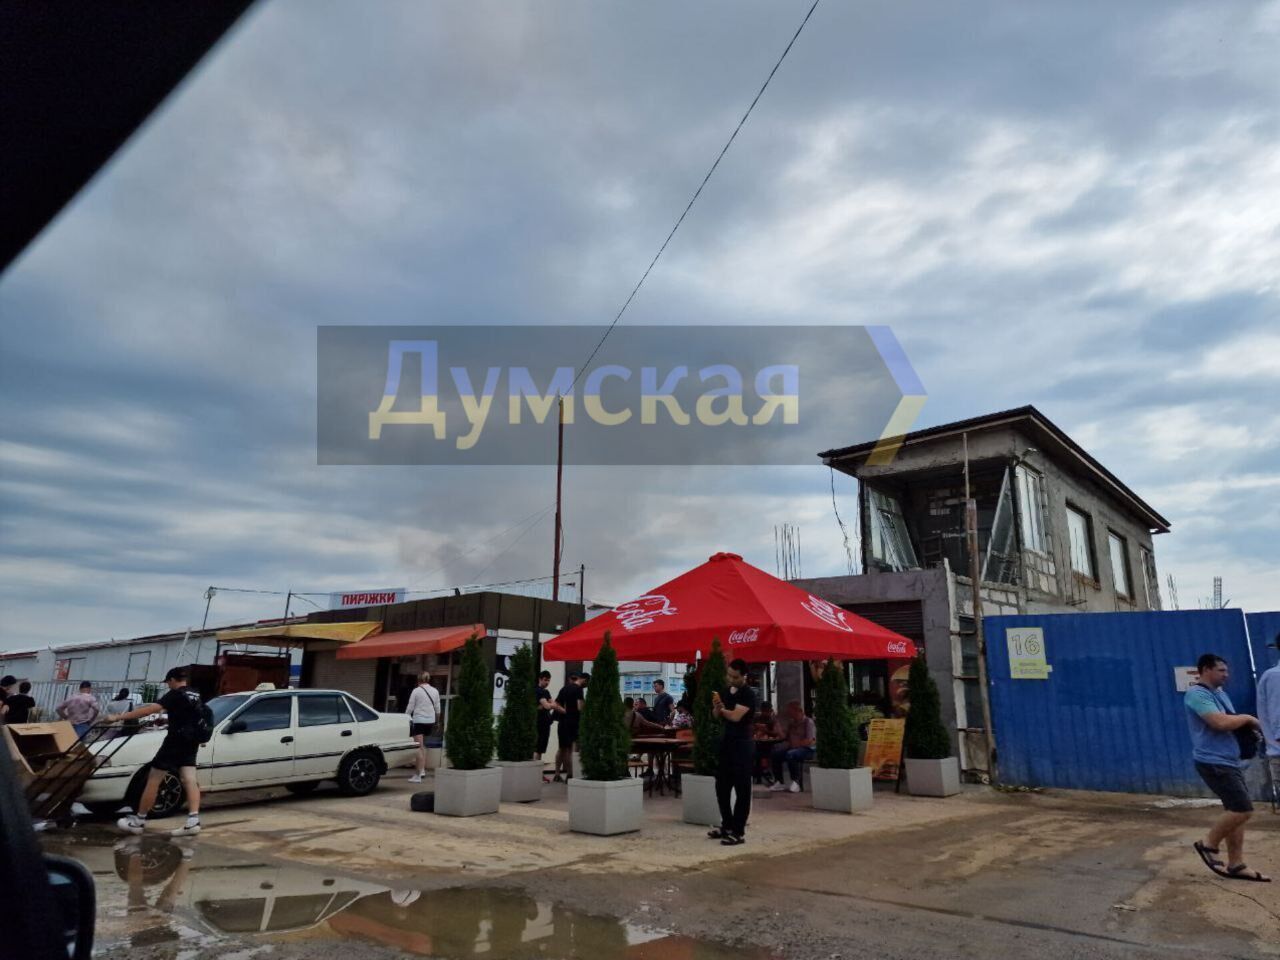 Сбитая ракета упала в жилом квартале, есть раненые: детали ночной атаки РФ на Одессу. Фото и видео